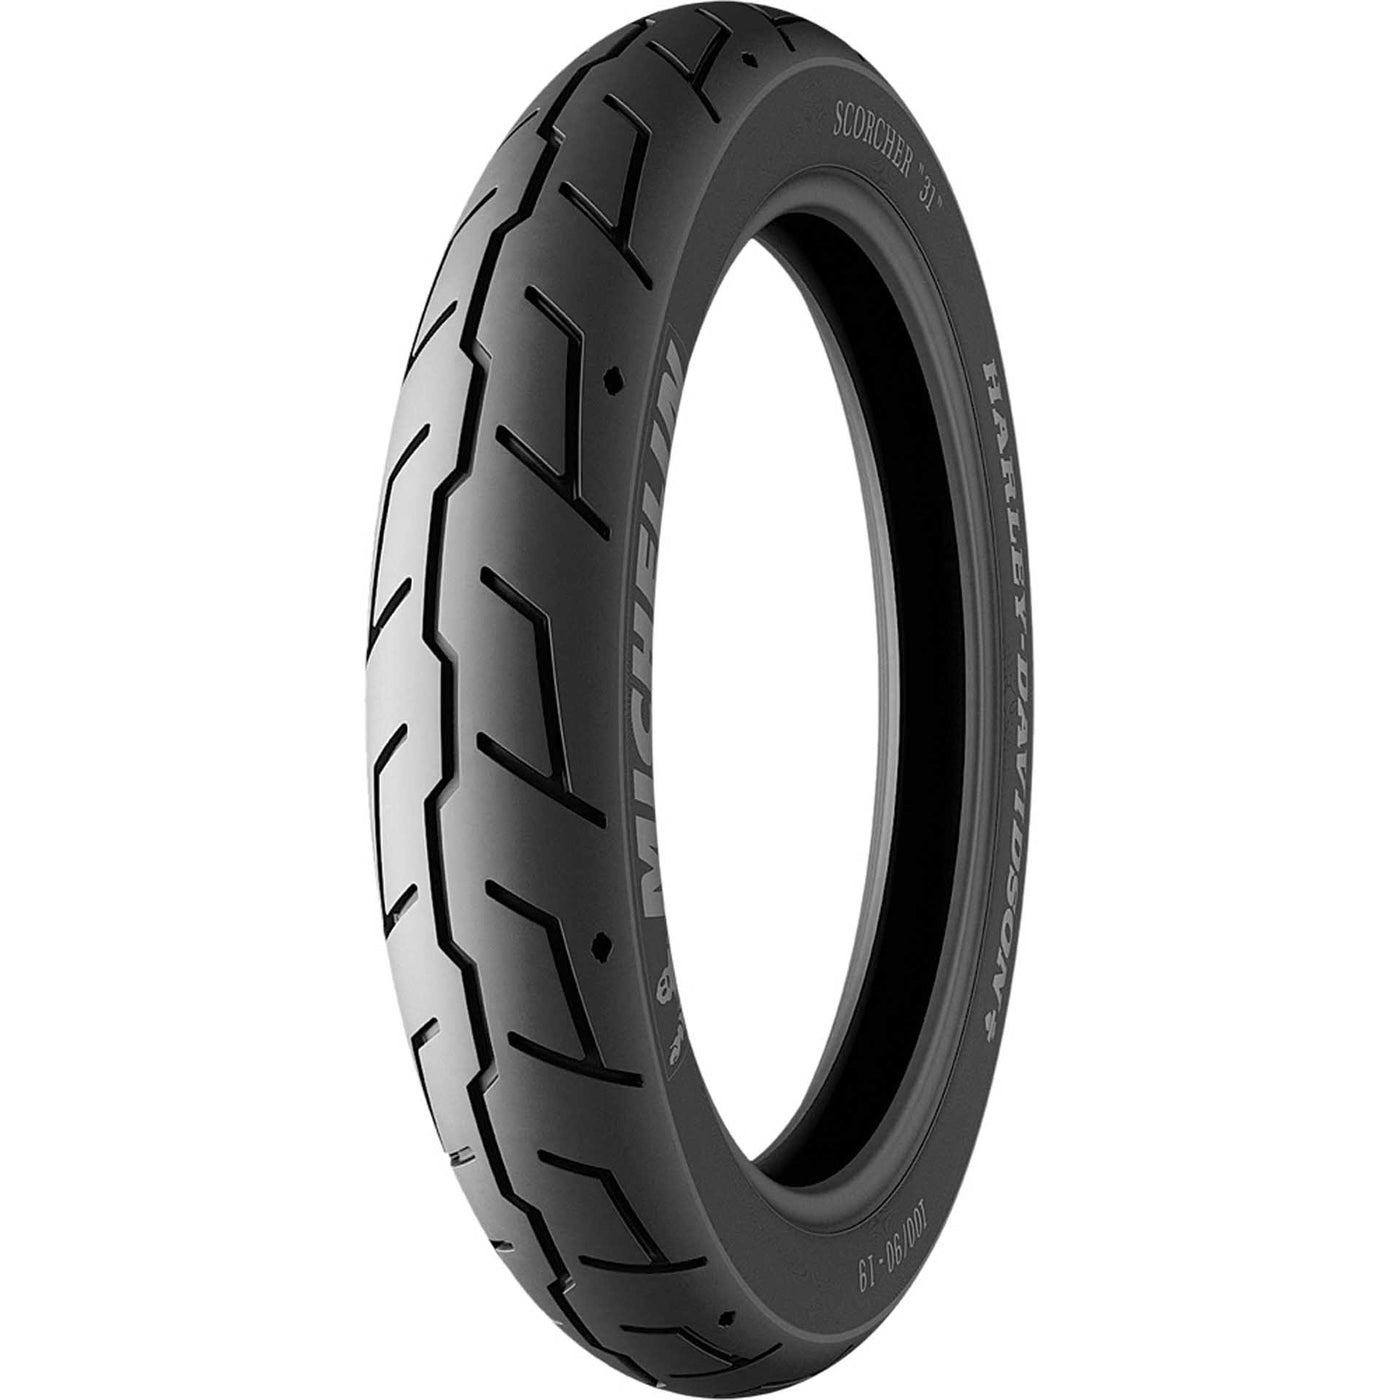 Michelin Scorcher 31 Tire